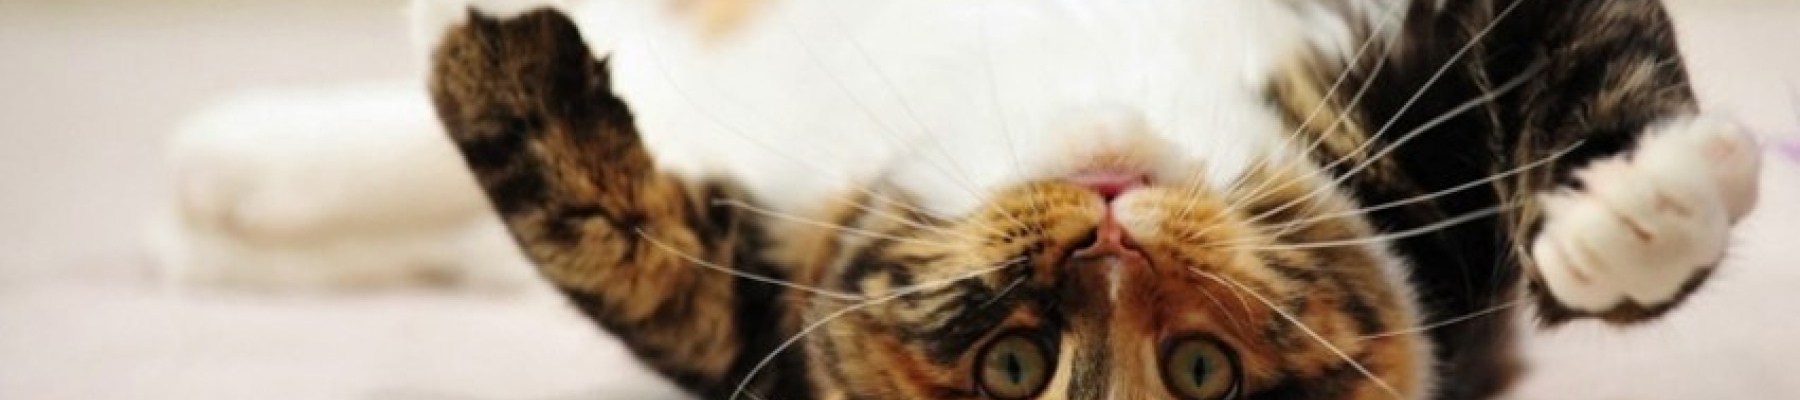 upside-down-cat-facebook-cover-timeline-banner-for-fb.jpg